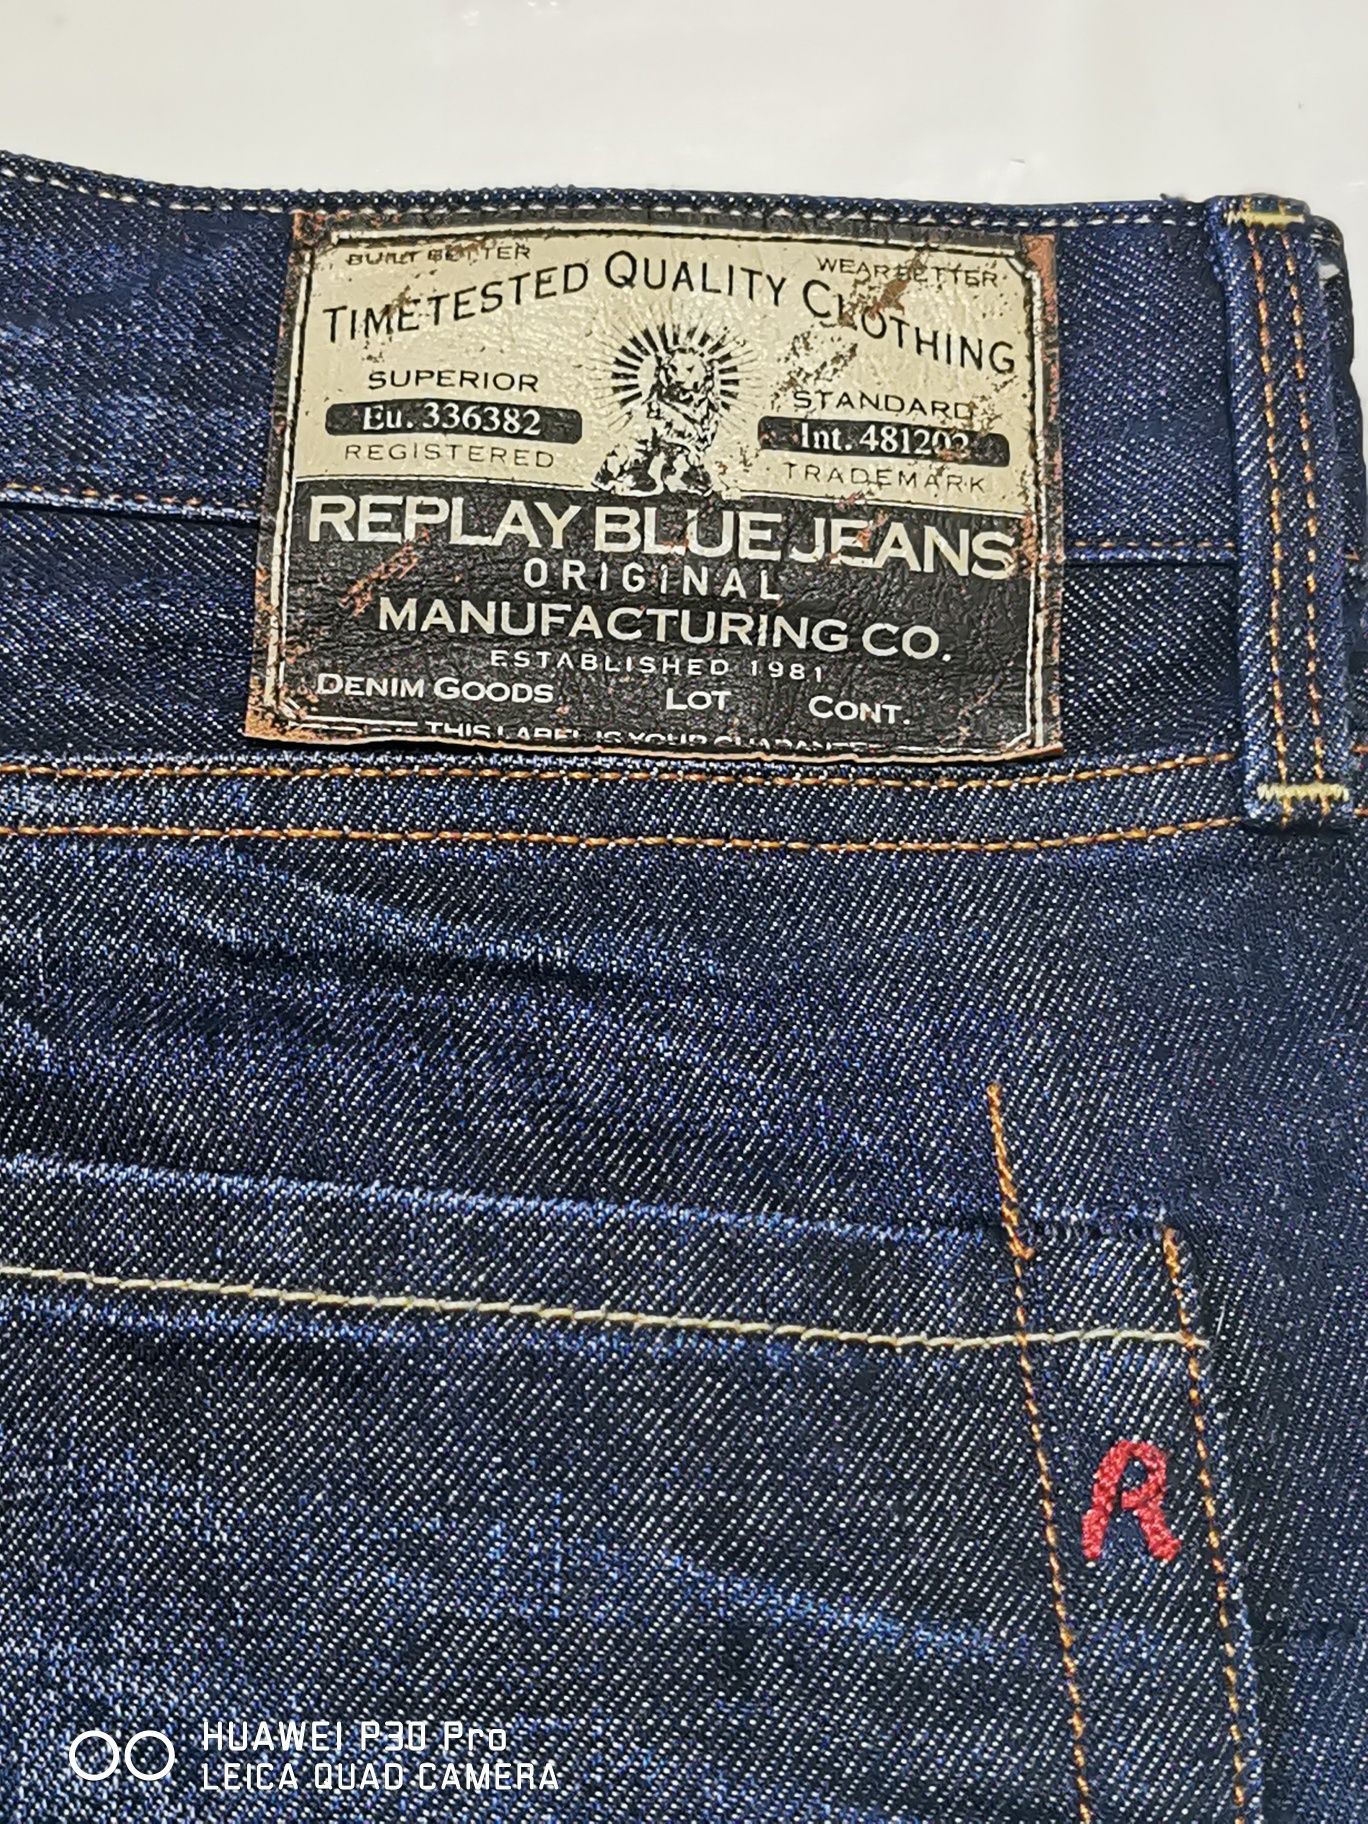 Vând blugi bărbați, Replay Blue Jeans